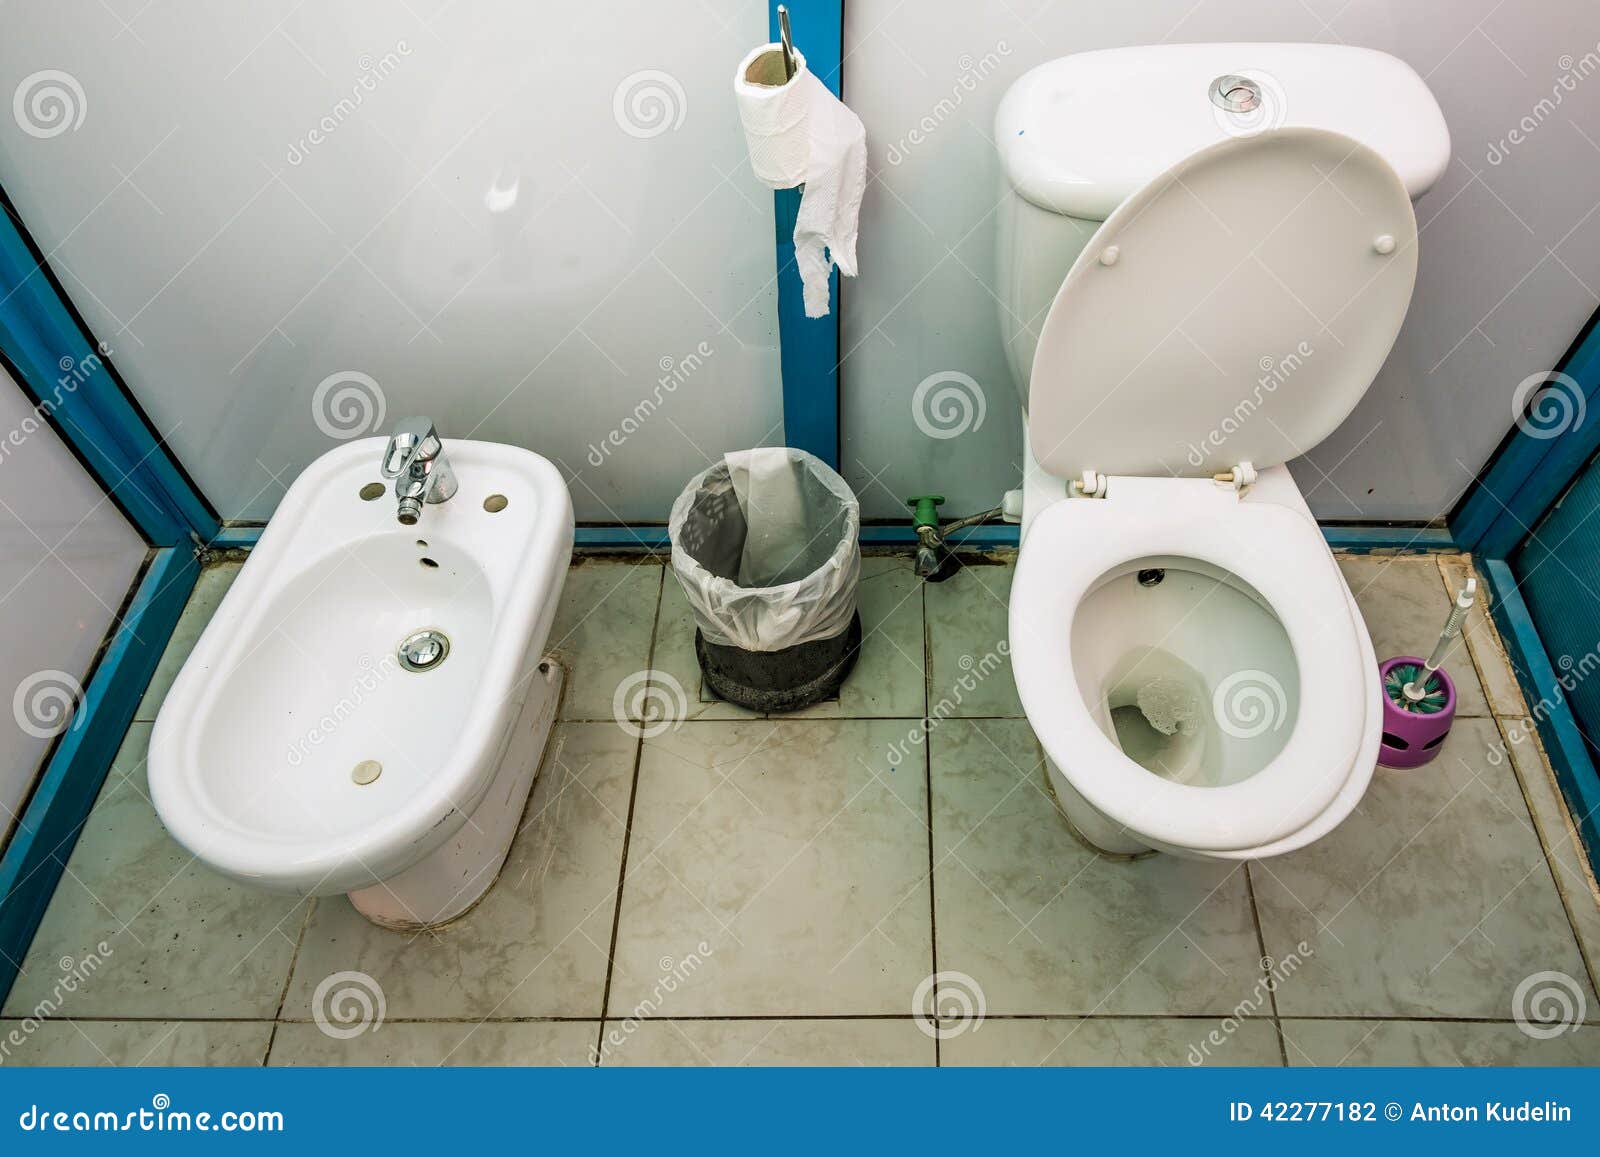 Напротив унитаза. Унитаз с биде. Биде в общественных туалетах. Женский туалет с биде. Биде рядом с унитазом.